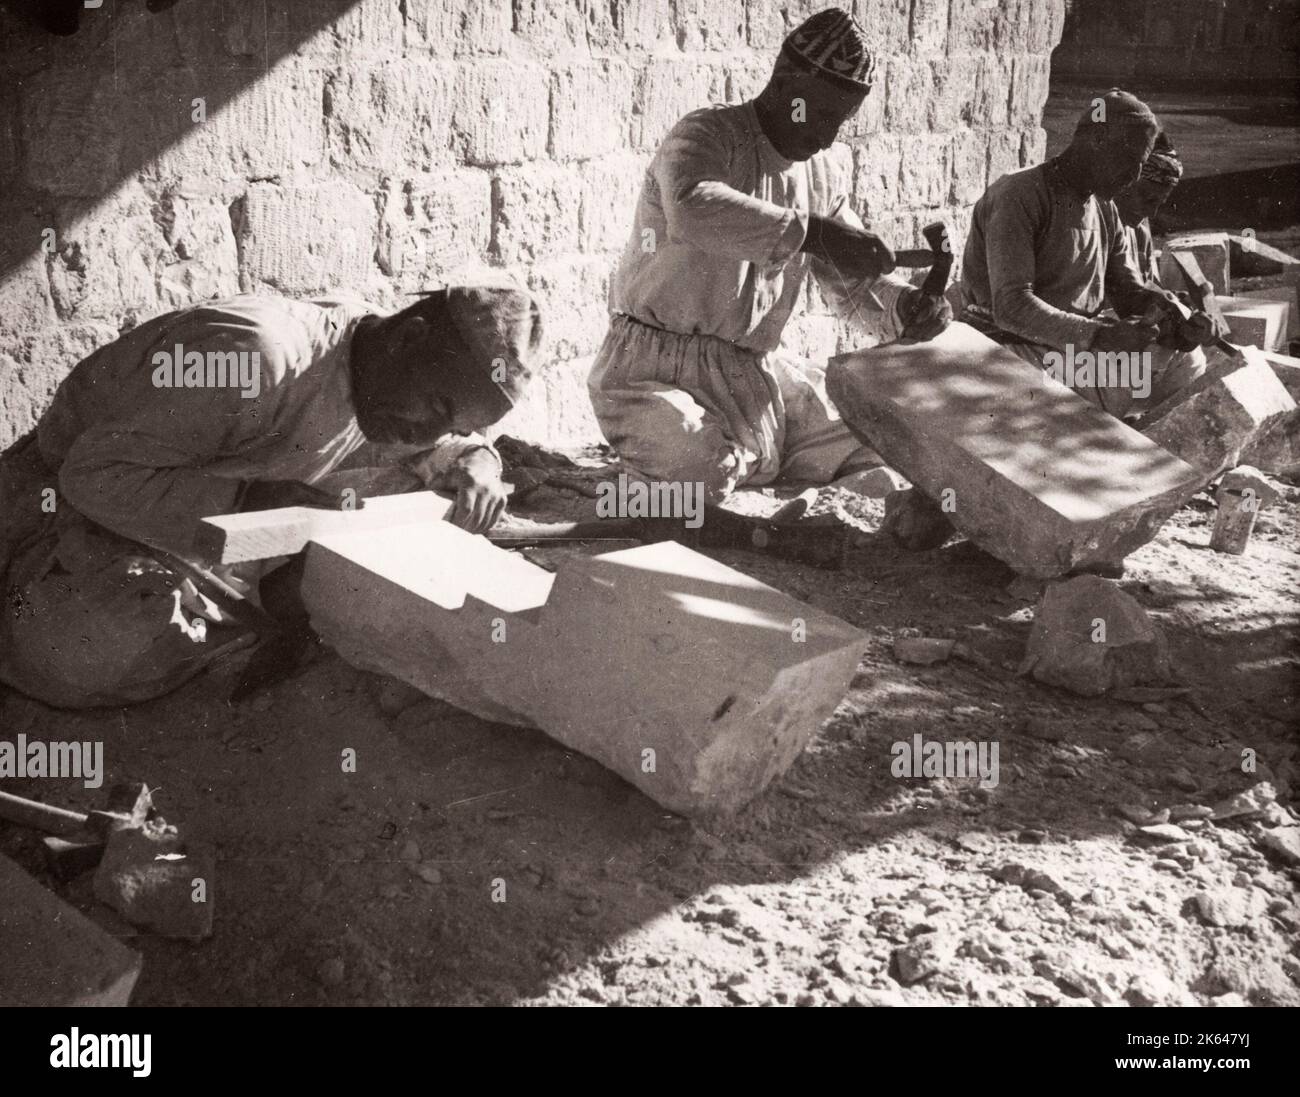 1943 Moyen-Orient Syrie - scène à Alep - maçons en pierre pierres pierres pierres Photographie par un officier de recrutement de l'armée britannique stationnés en Afrique de l'est et au Moyen-Orient pendant la Seconde Guerre mondiale Banque D'Images